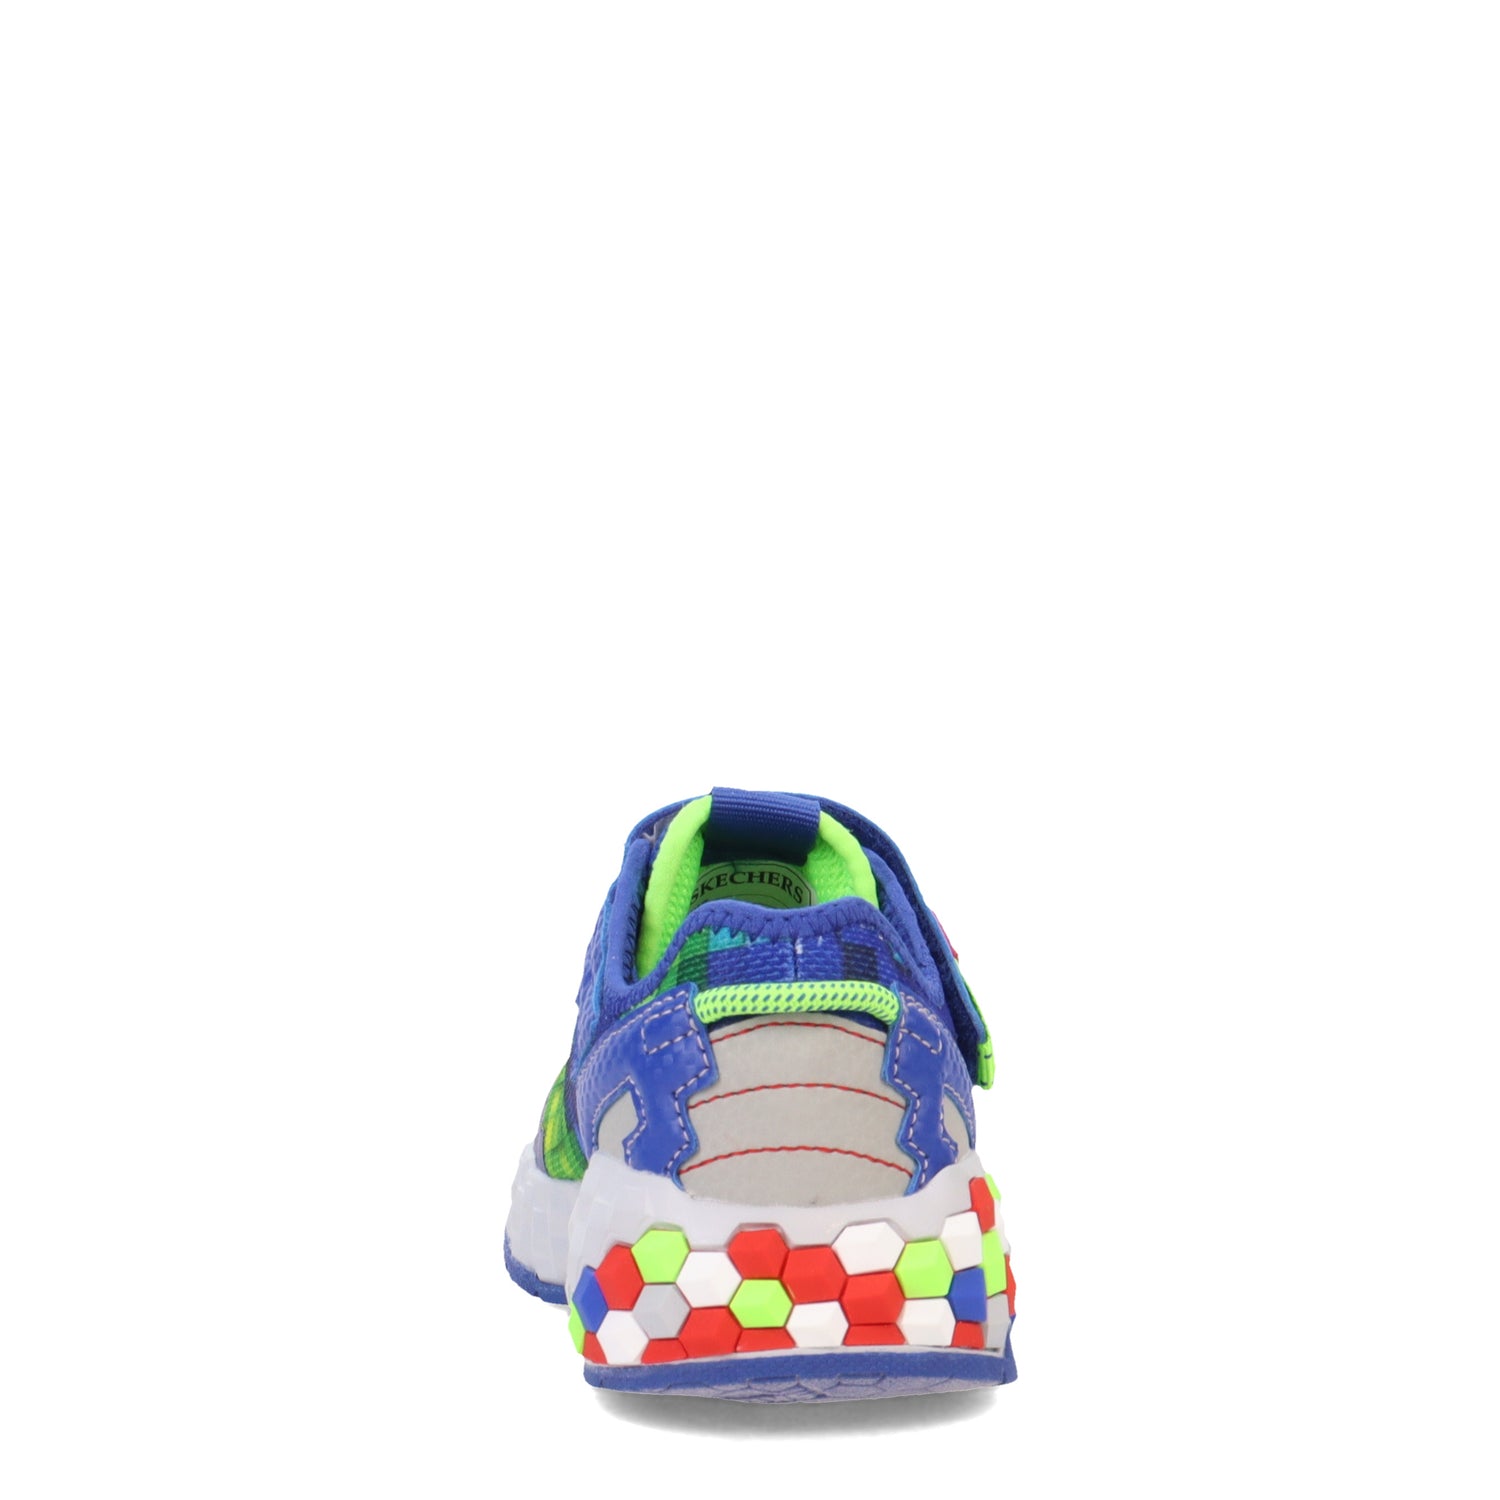 Peltz Shoes  Boy's Skechers Mega-Craft 2.0 Sneaker - Little Kid & Big Kid BLUE MULTI 402204L-BLMT